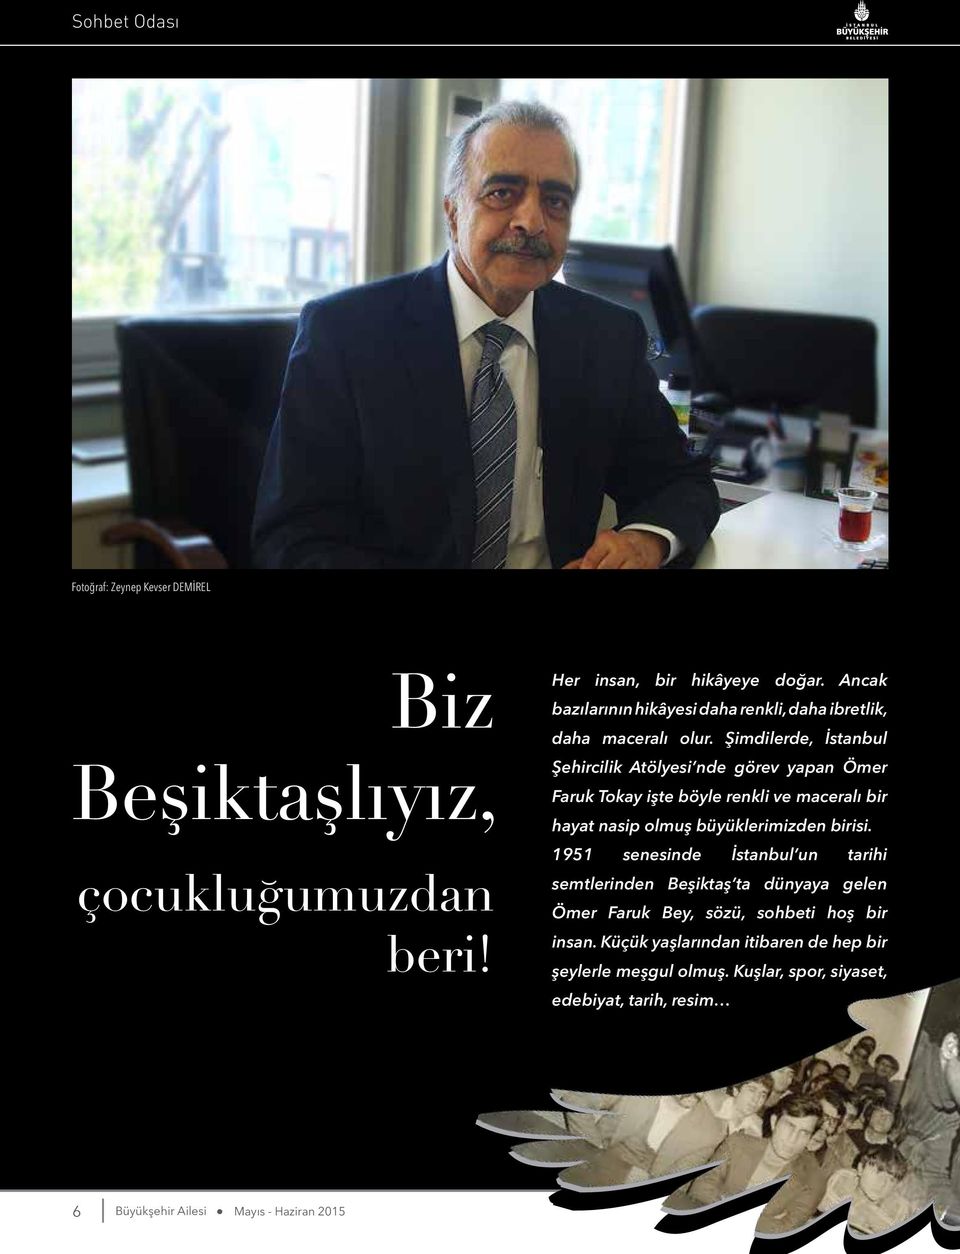 Şimdilerde, İstanbul Şehircilik Atölyesi nde görev yapan Ömer Faruk Tokay işte böyle renkli ve maceralı bir hayat nasip olmuş büyüklerimizden birisi.